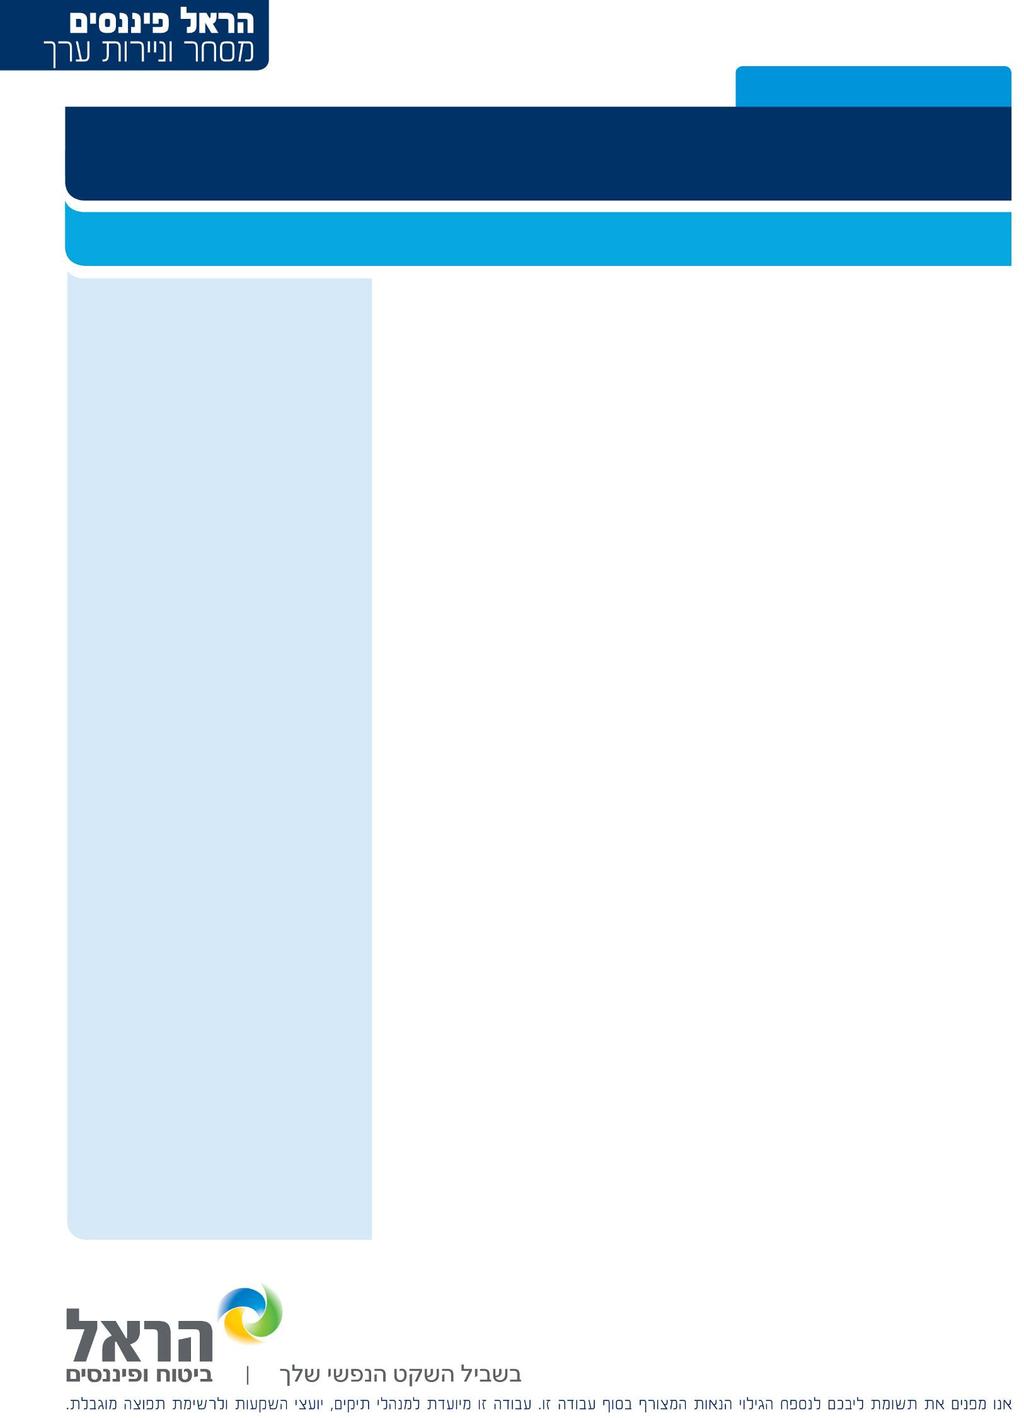 1 9/8/2012 איזיצ'יפ תוצאות רבעון 2012 2, תשואת יתר, $35 האטה משמעותית בהוצ' הוניות של מפעילות תקשורת, מובילה להורדת מחיר היעד ל- $35 איזיצ'יפ דיווחה על תוצאות טובות מהצפי לרבעון השני של 2012, אך